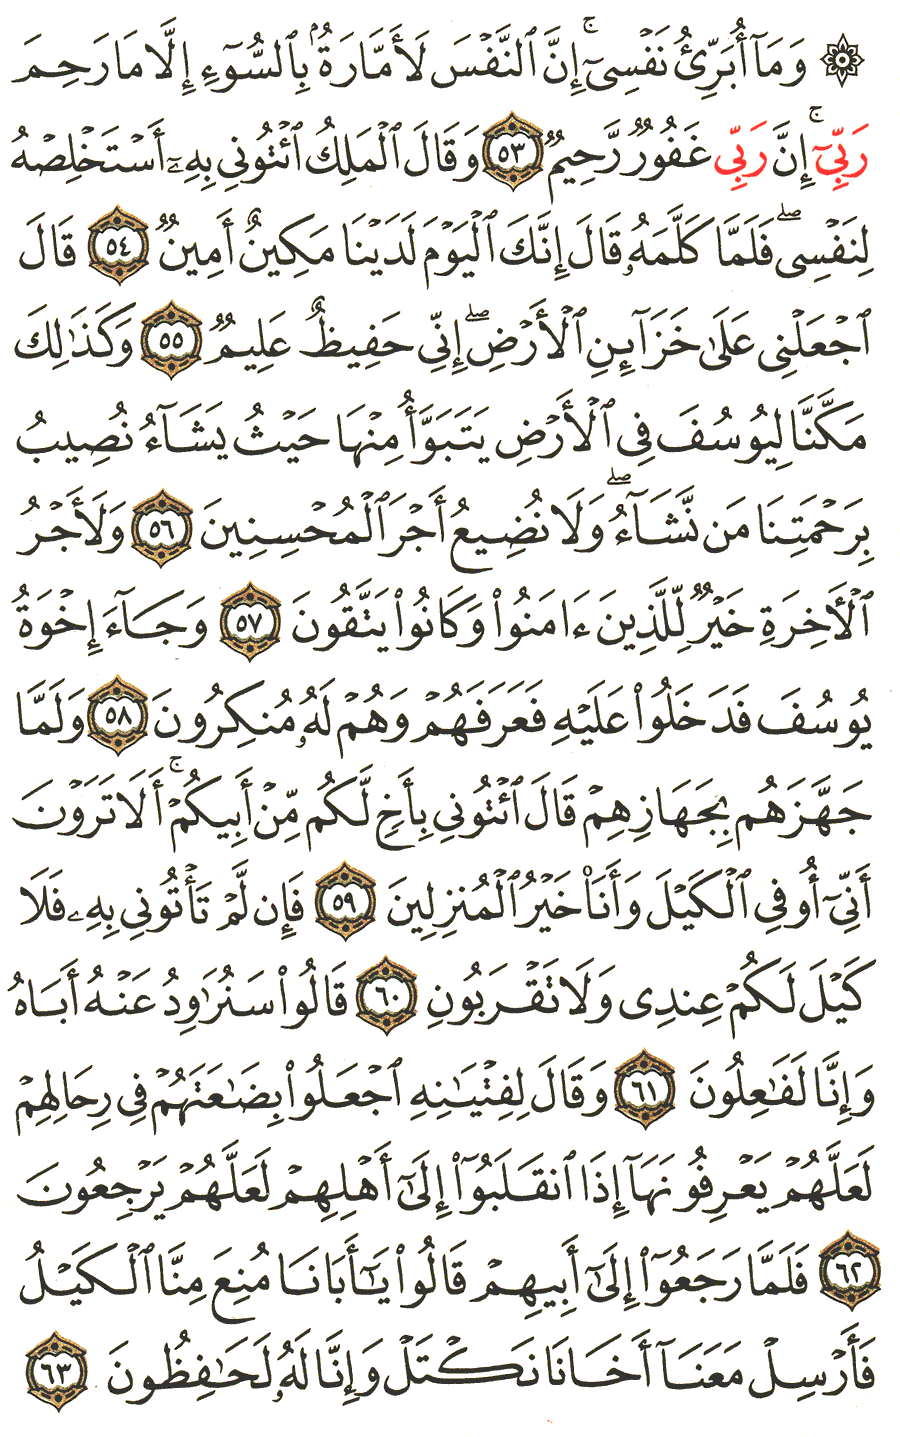 الصفحة رقم 242  من القرآن الكريم مكتوبة من المصحف